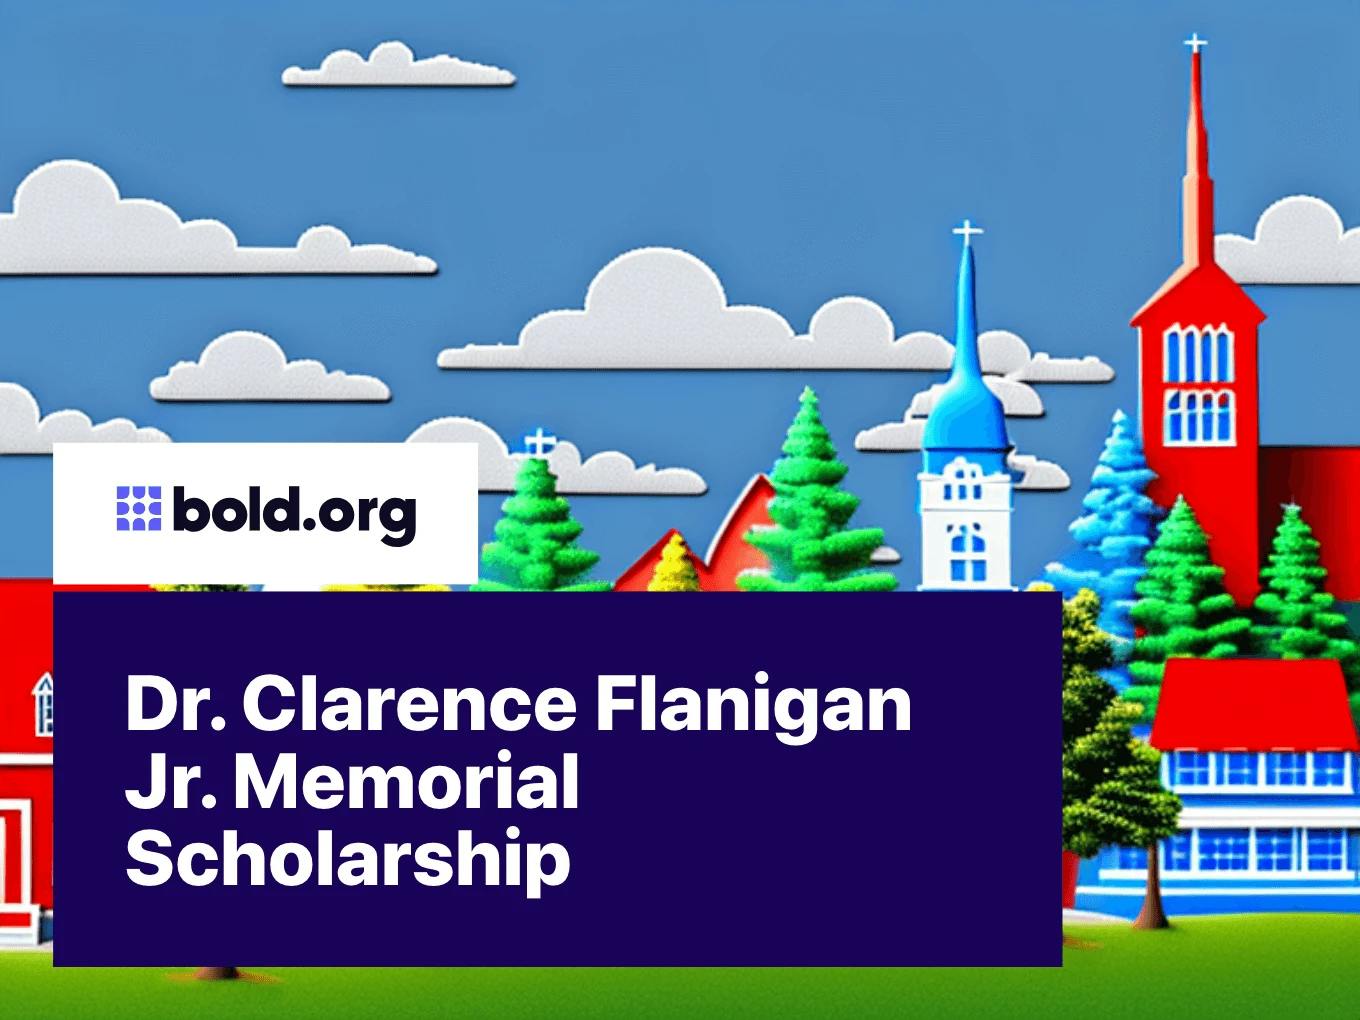 Dr. Clarence Flanigan Jr. Memorial Scholarship